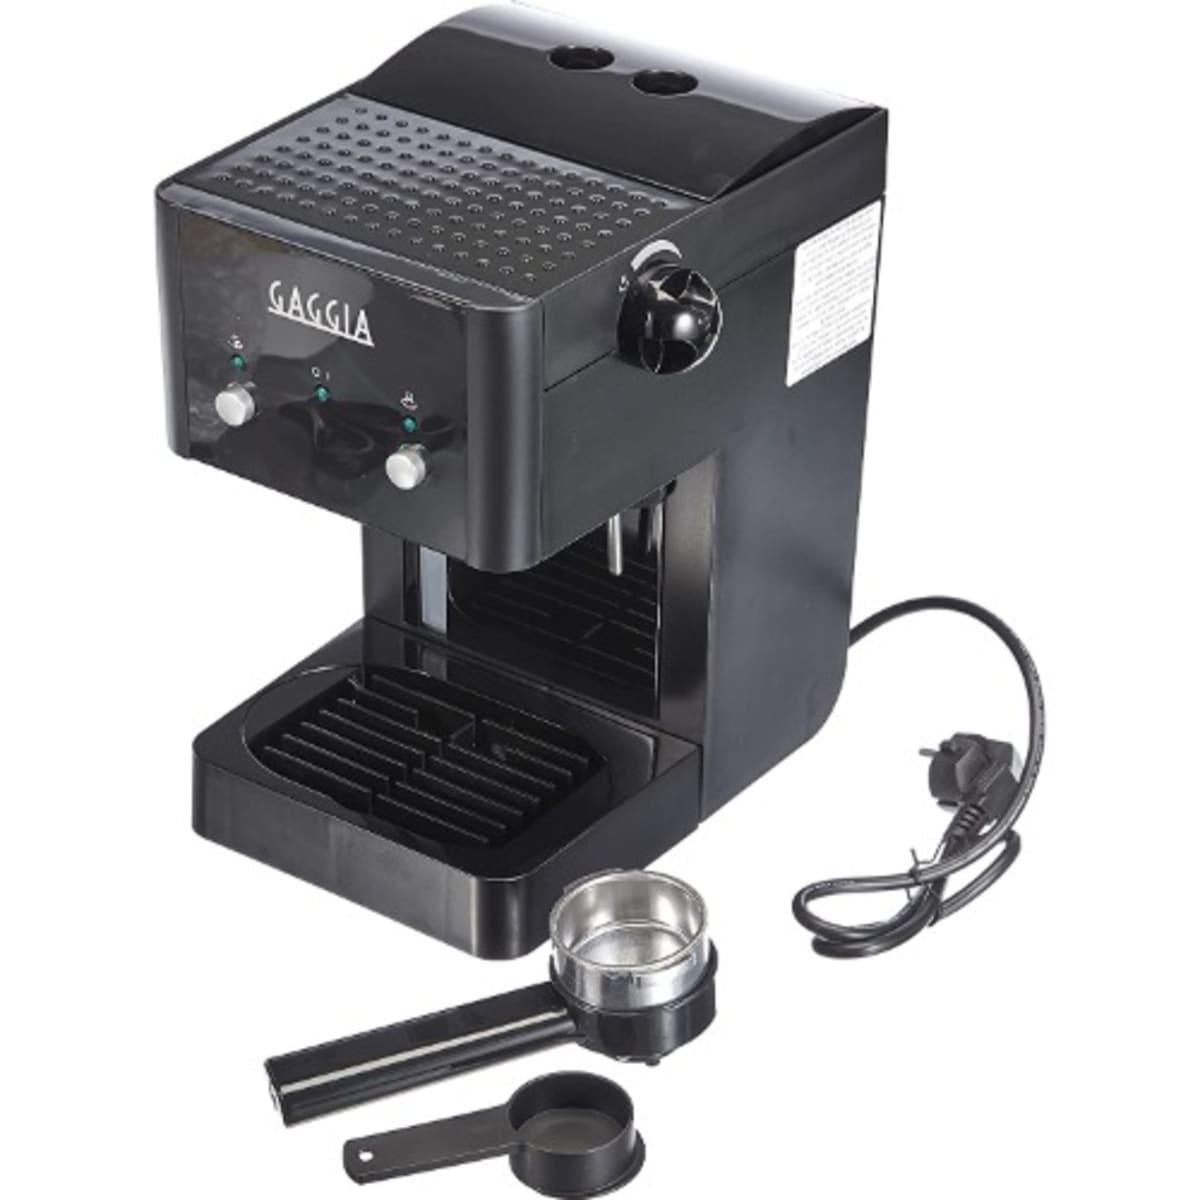 Gaggia, Gran Style, Pump Manual Espresso and Coffee Machine